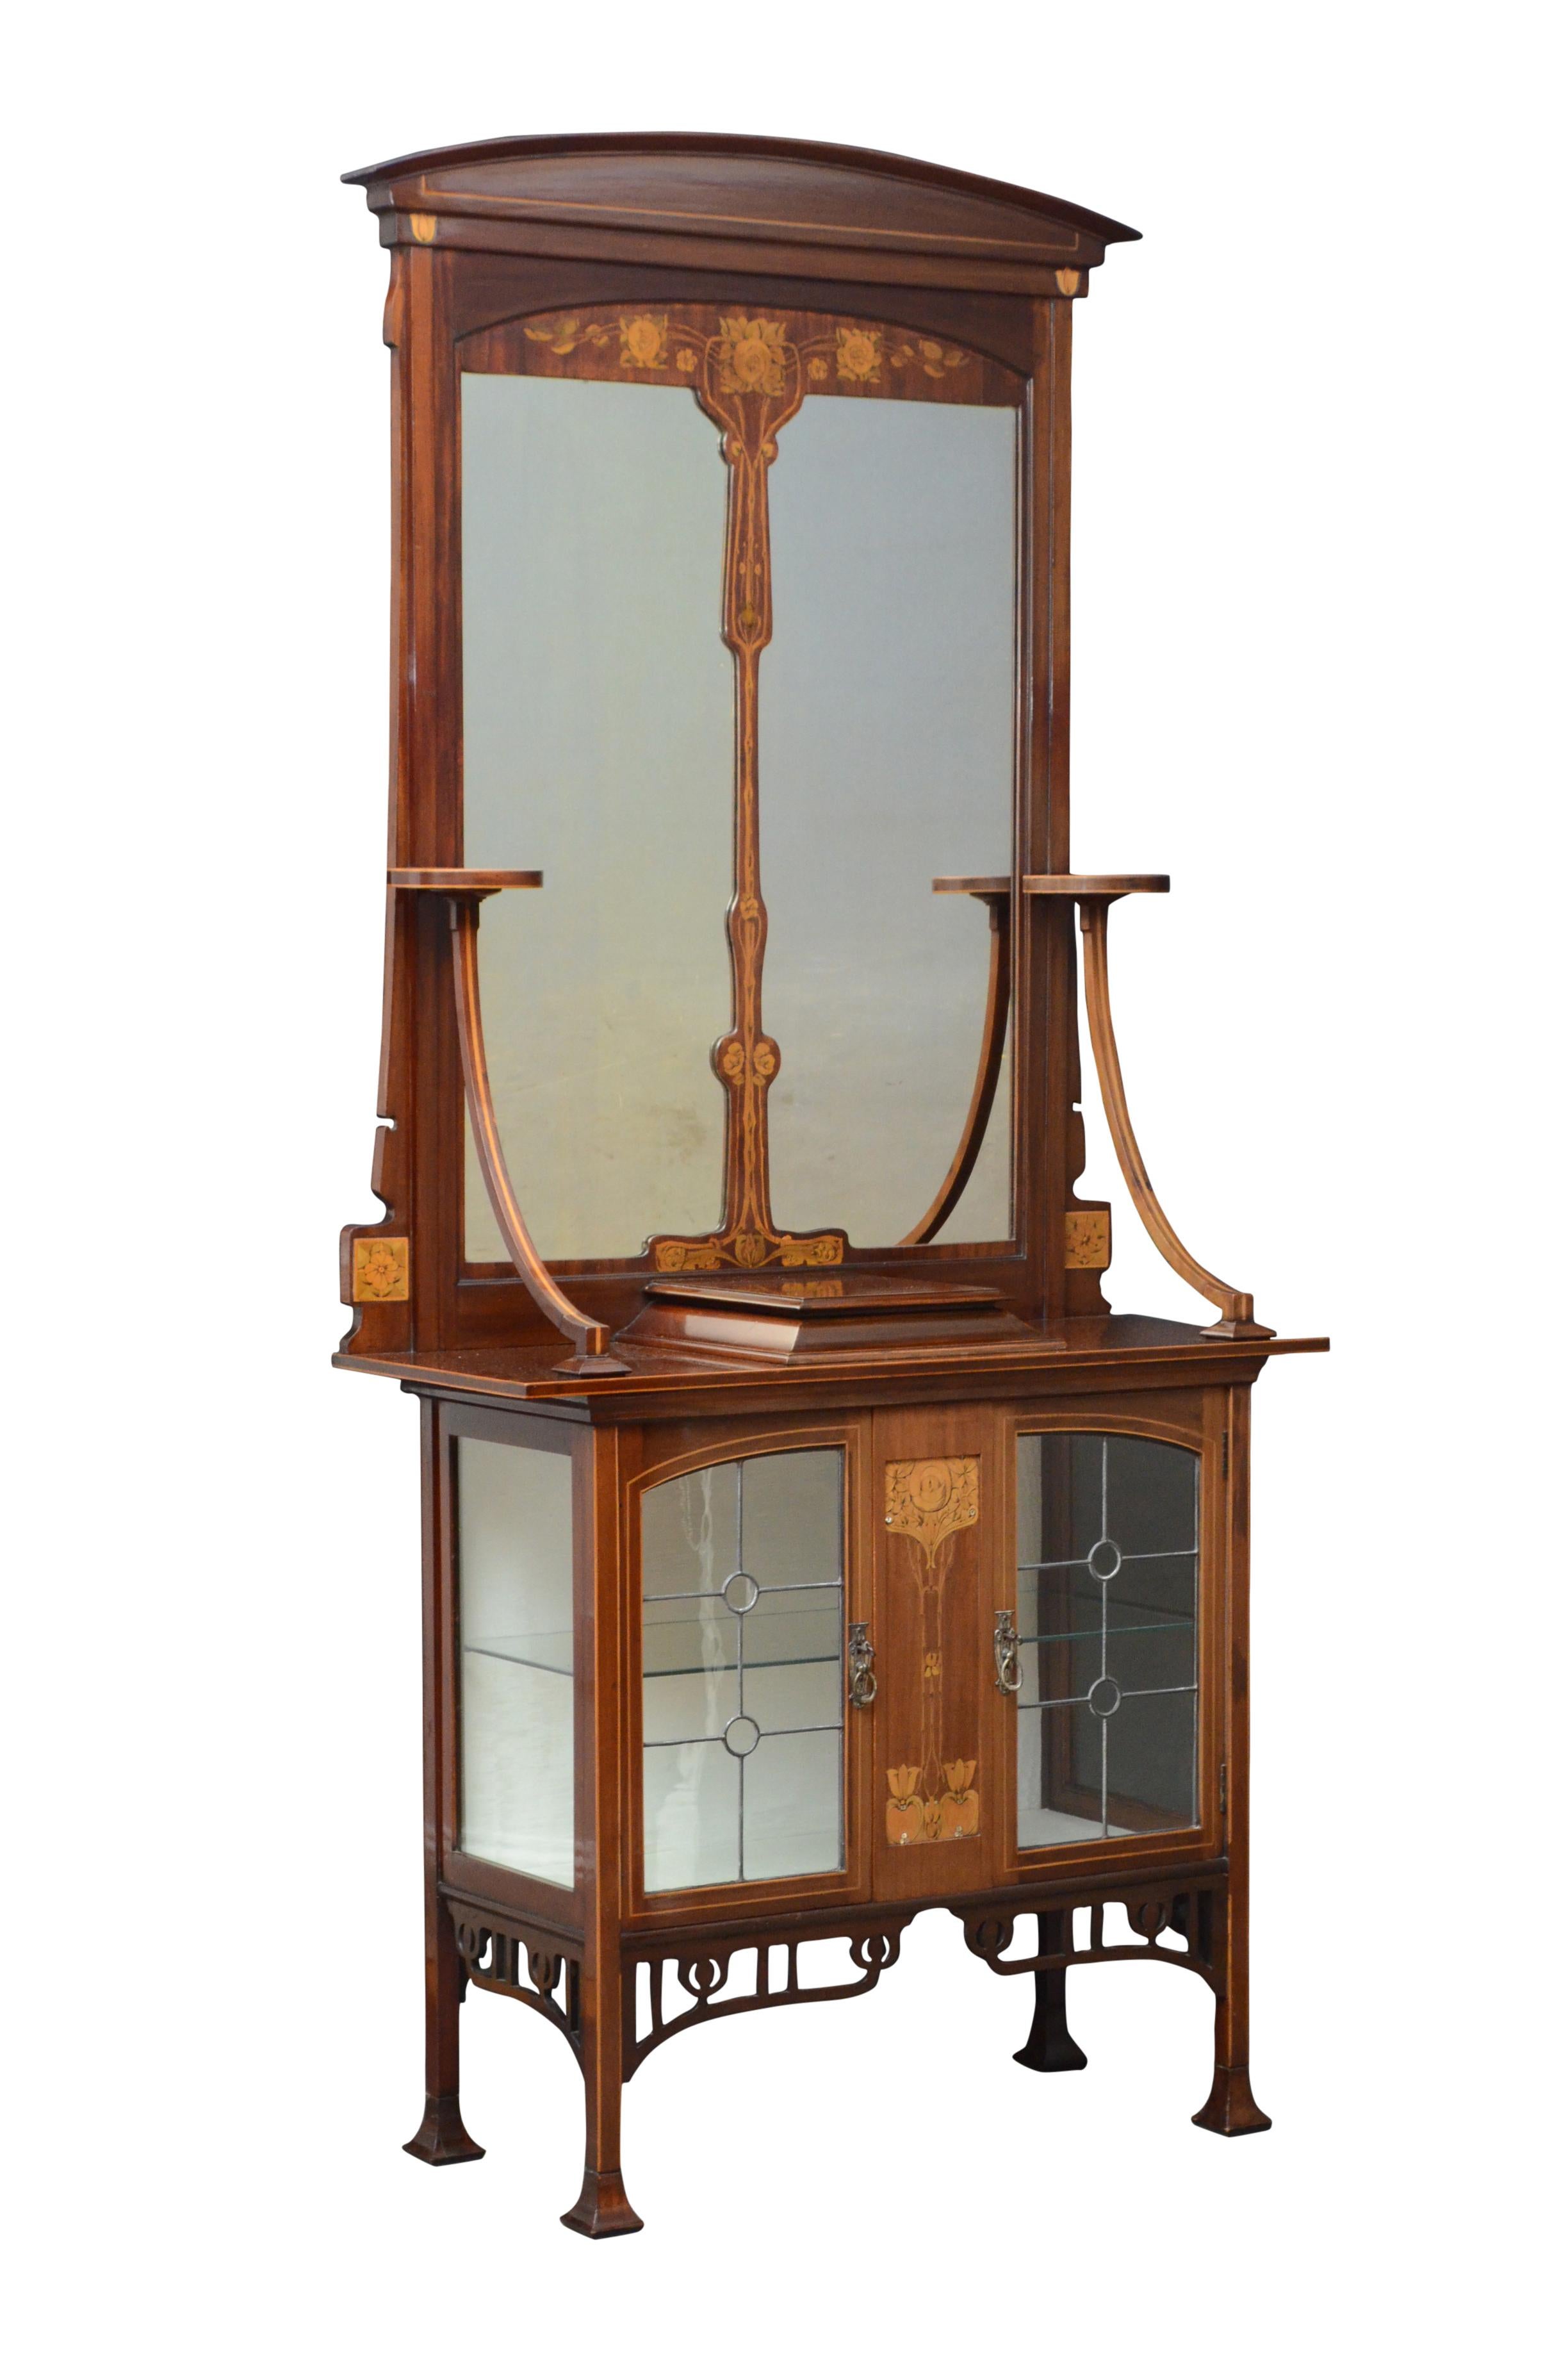 K0450 élégant meuble d'entrée Art Nouveau en acajou et marqueterie avec une crête arquée au-dessus d'un miroir divisé flanqué d'une paire de plates-formes circulaires sur des supports inclinés, la base en saillie ayant un panneau central incrusté de